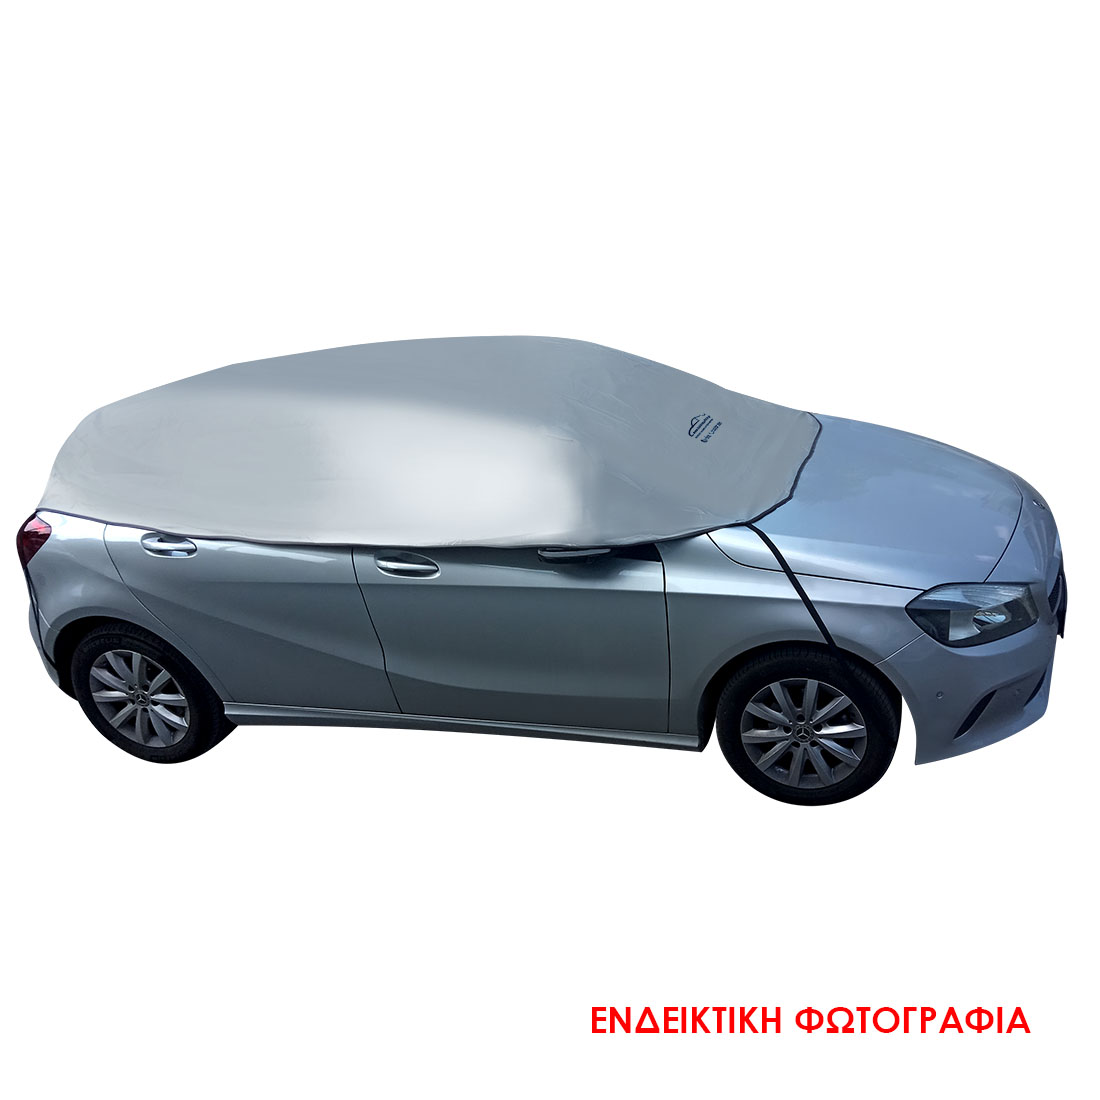 Ημικουκούλα PVC αδιάβροχη για SUV (SUV2) (3.55x1.40x0.70cm)